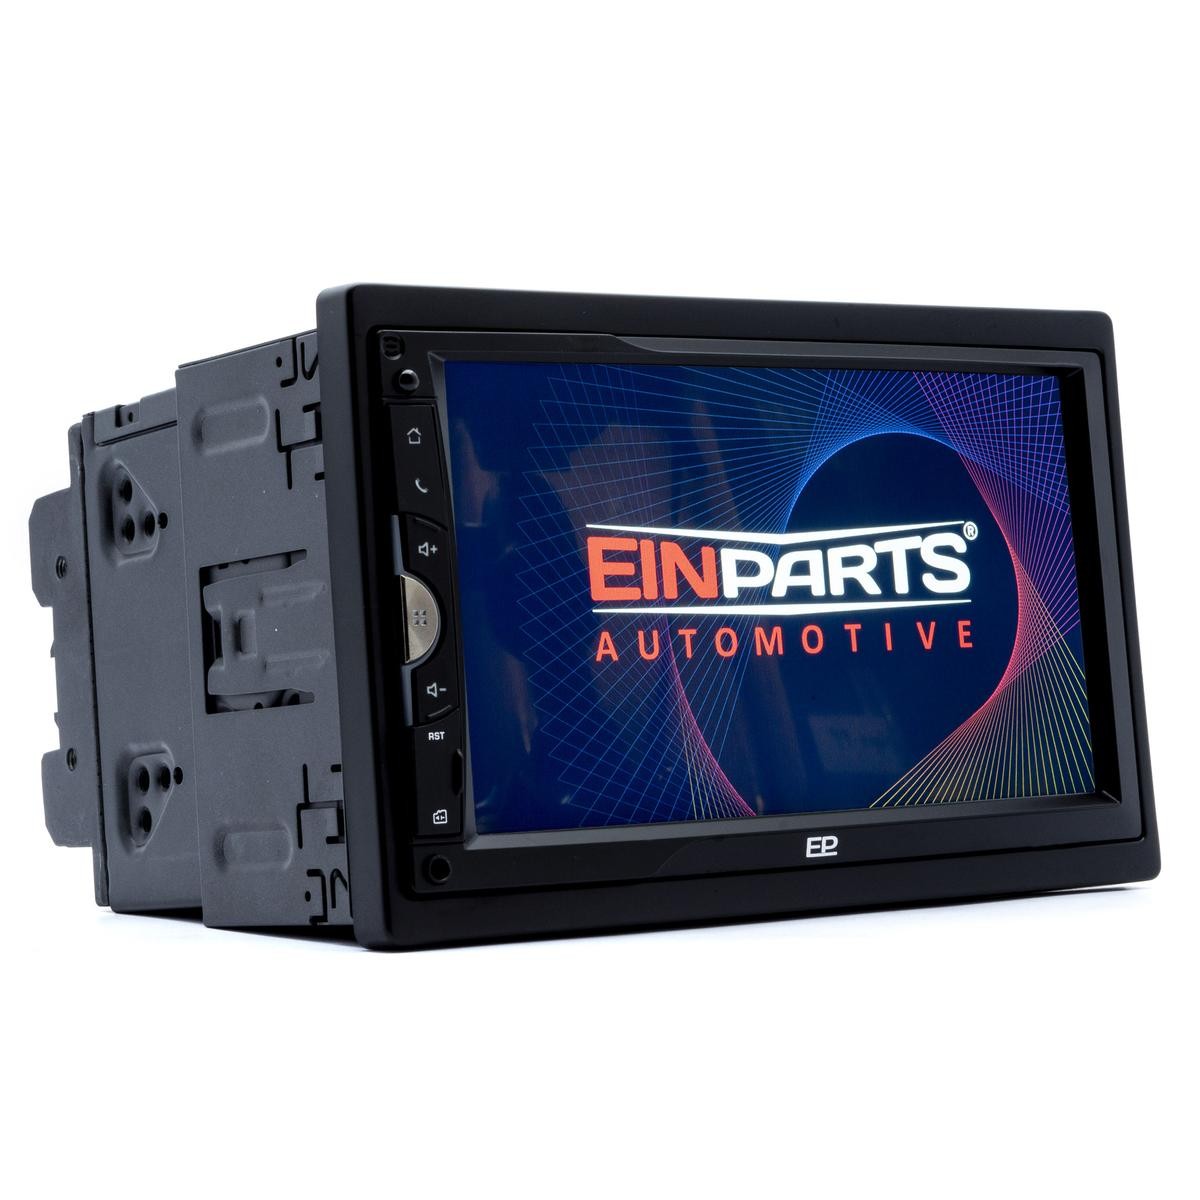 EPCR13 EINPARTS de qualidade originais